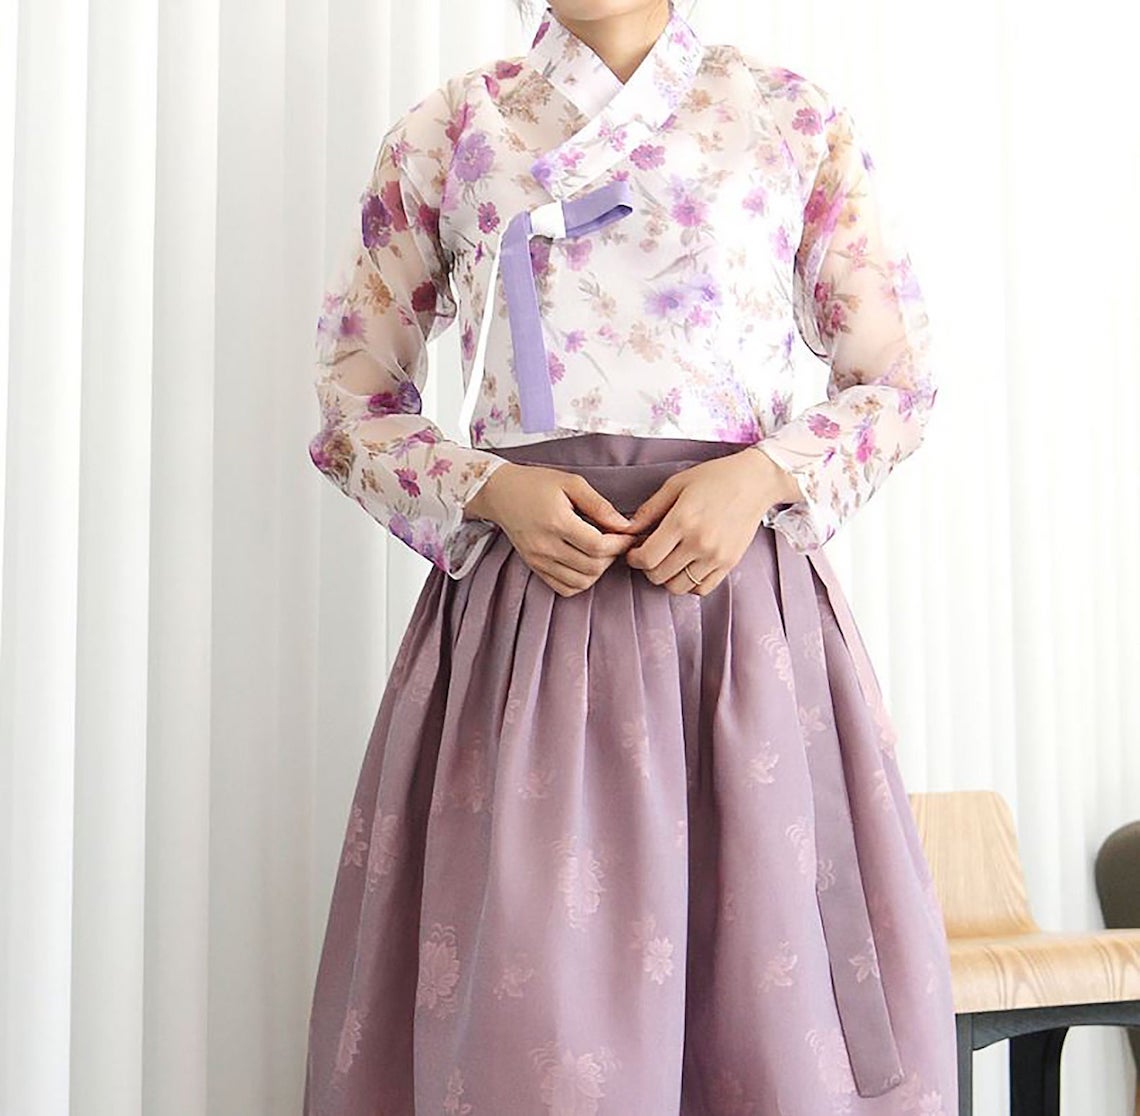 Purple Lilac Lavender Print Wedding Hanbok Modern Korean Hanbok Wedding Dresses Bridal Musings - 15 chiếc váy cưới Hanbok Hàn Quốc tuyệt đẹp và hiện đại